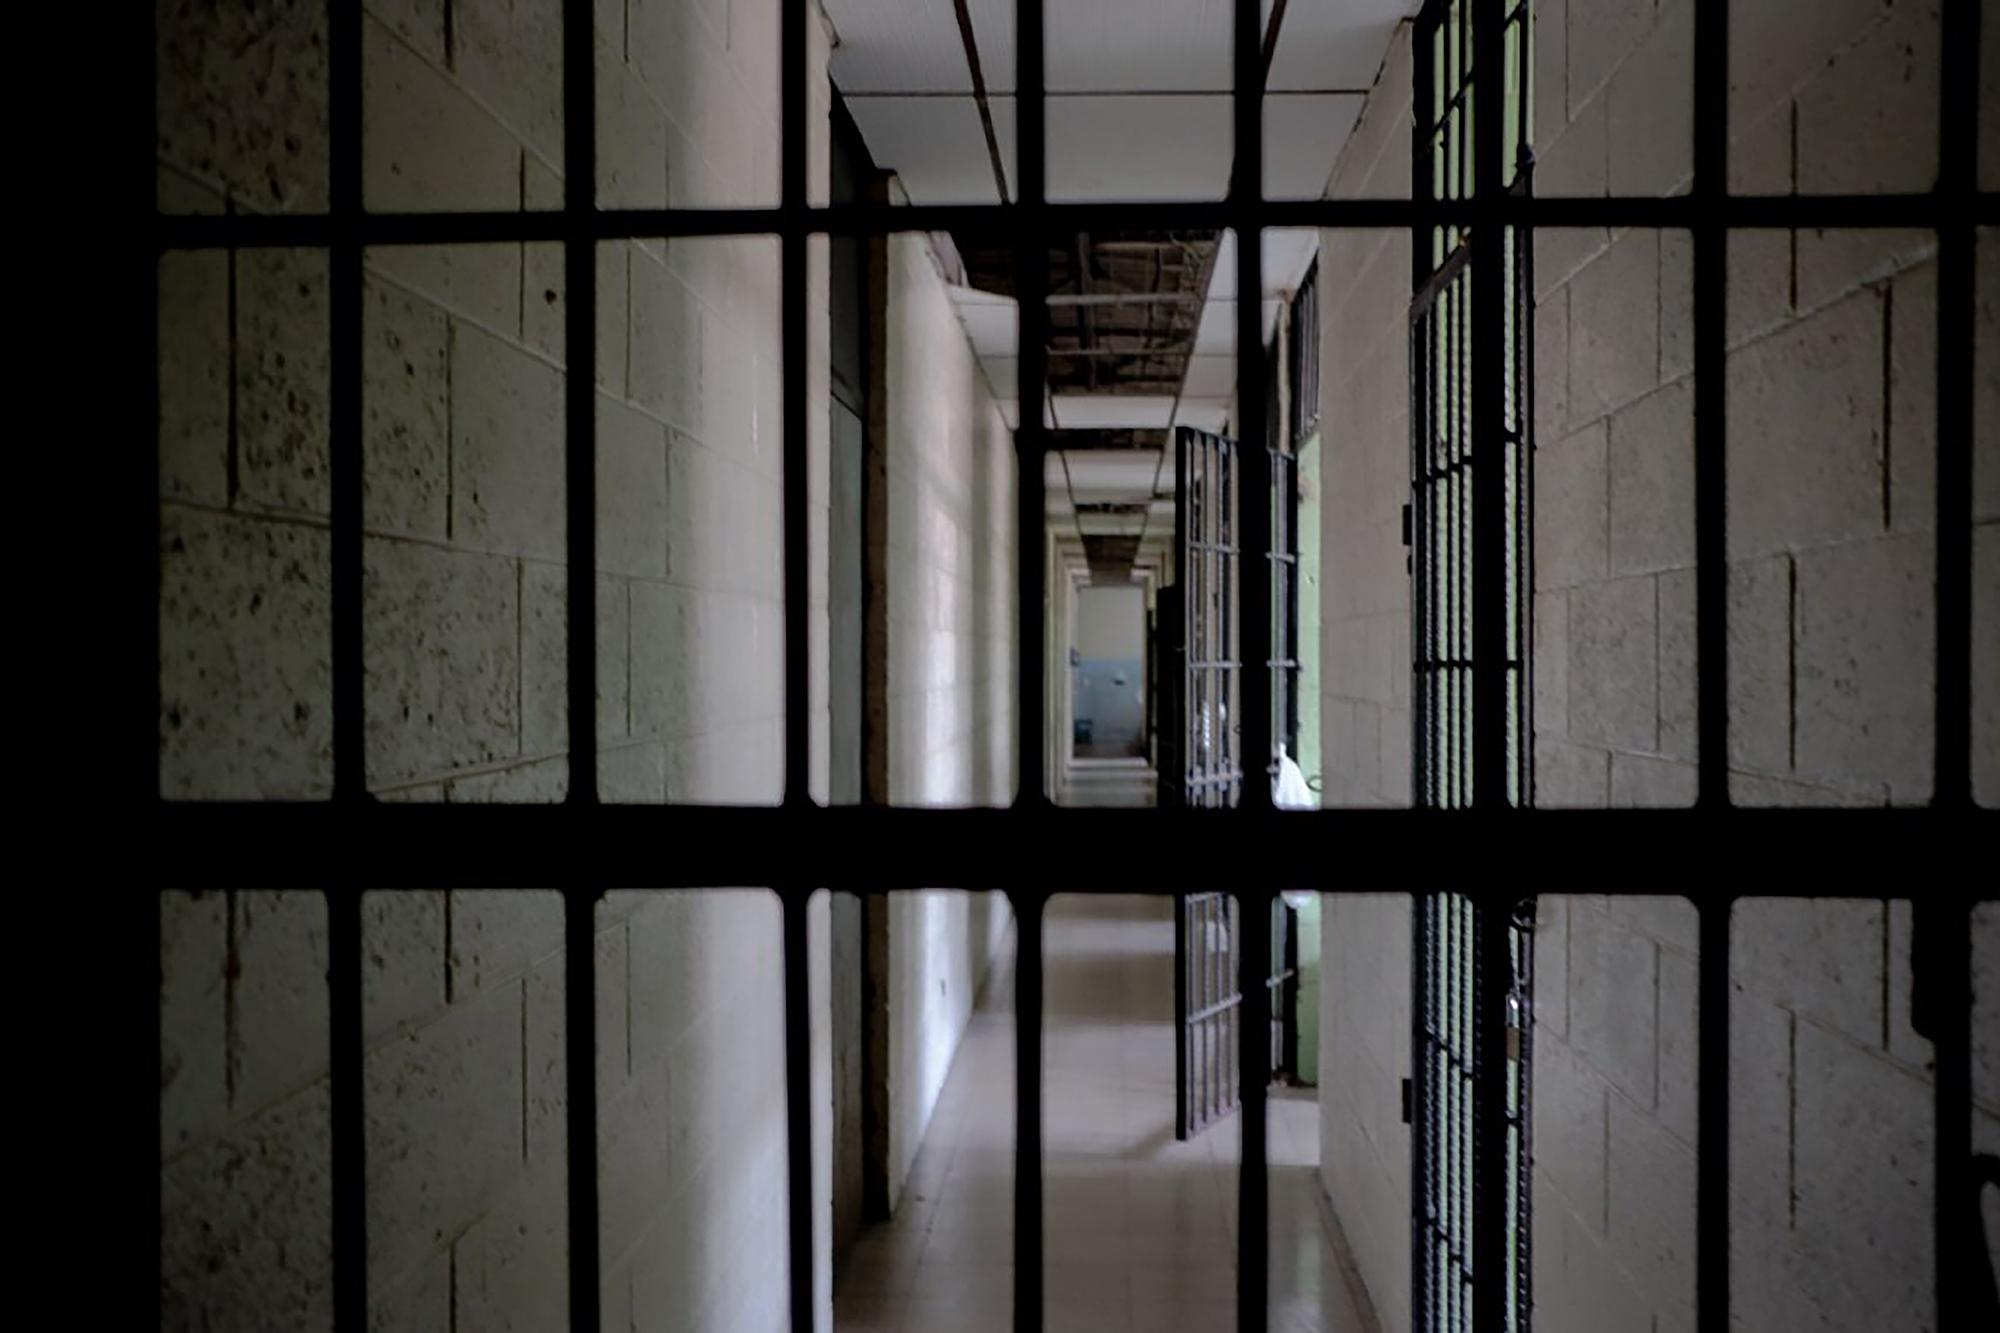 Pasillo del sector 9 en el centro penal La Esperanza. Al final del pasillo, los baños y la pila. Foto de El Faro: Fred Ramos 